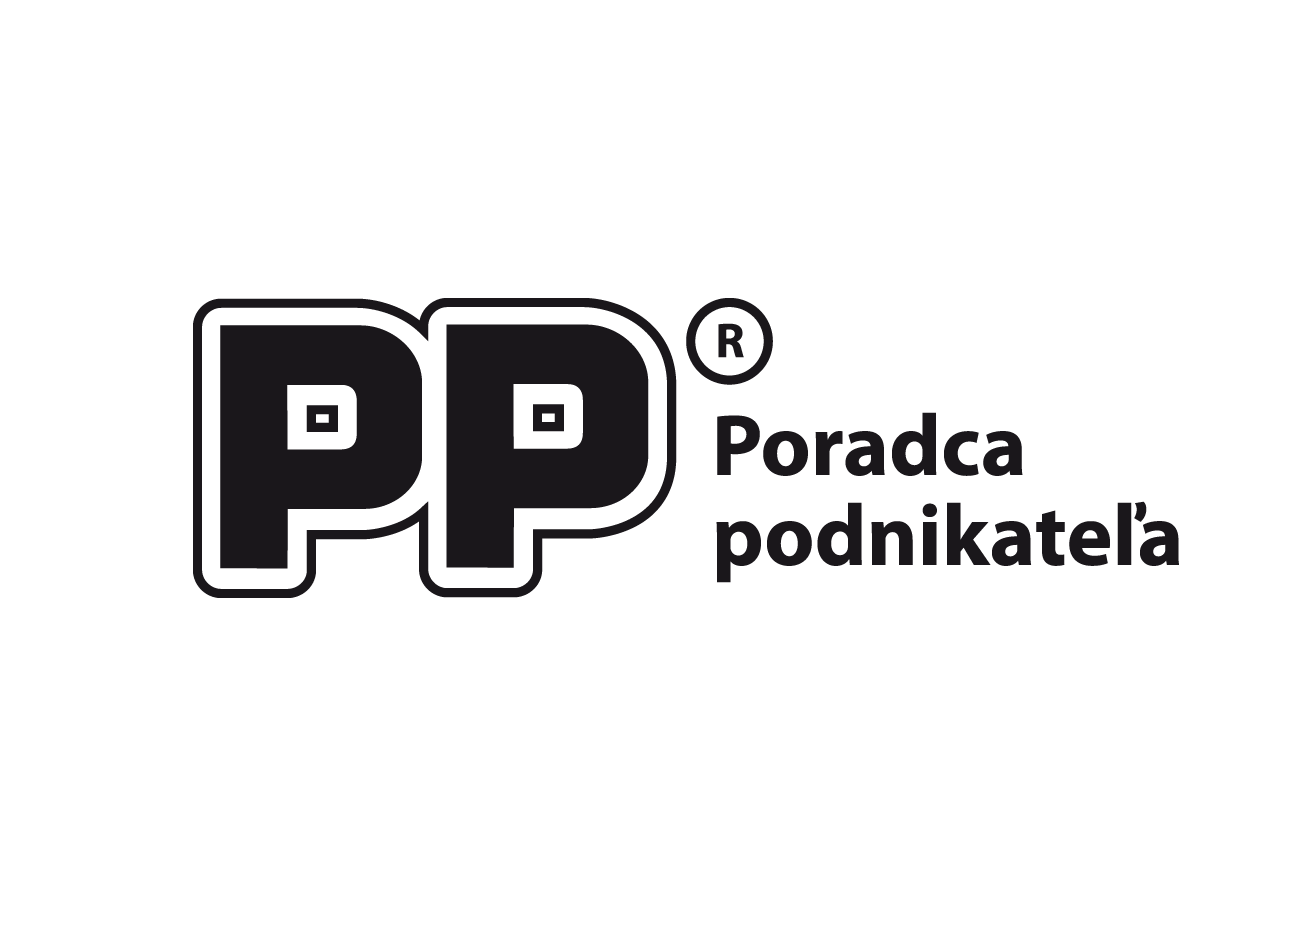 pp_logo_1304x936